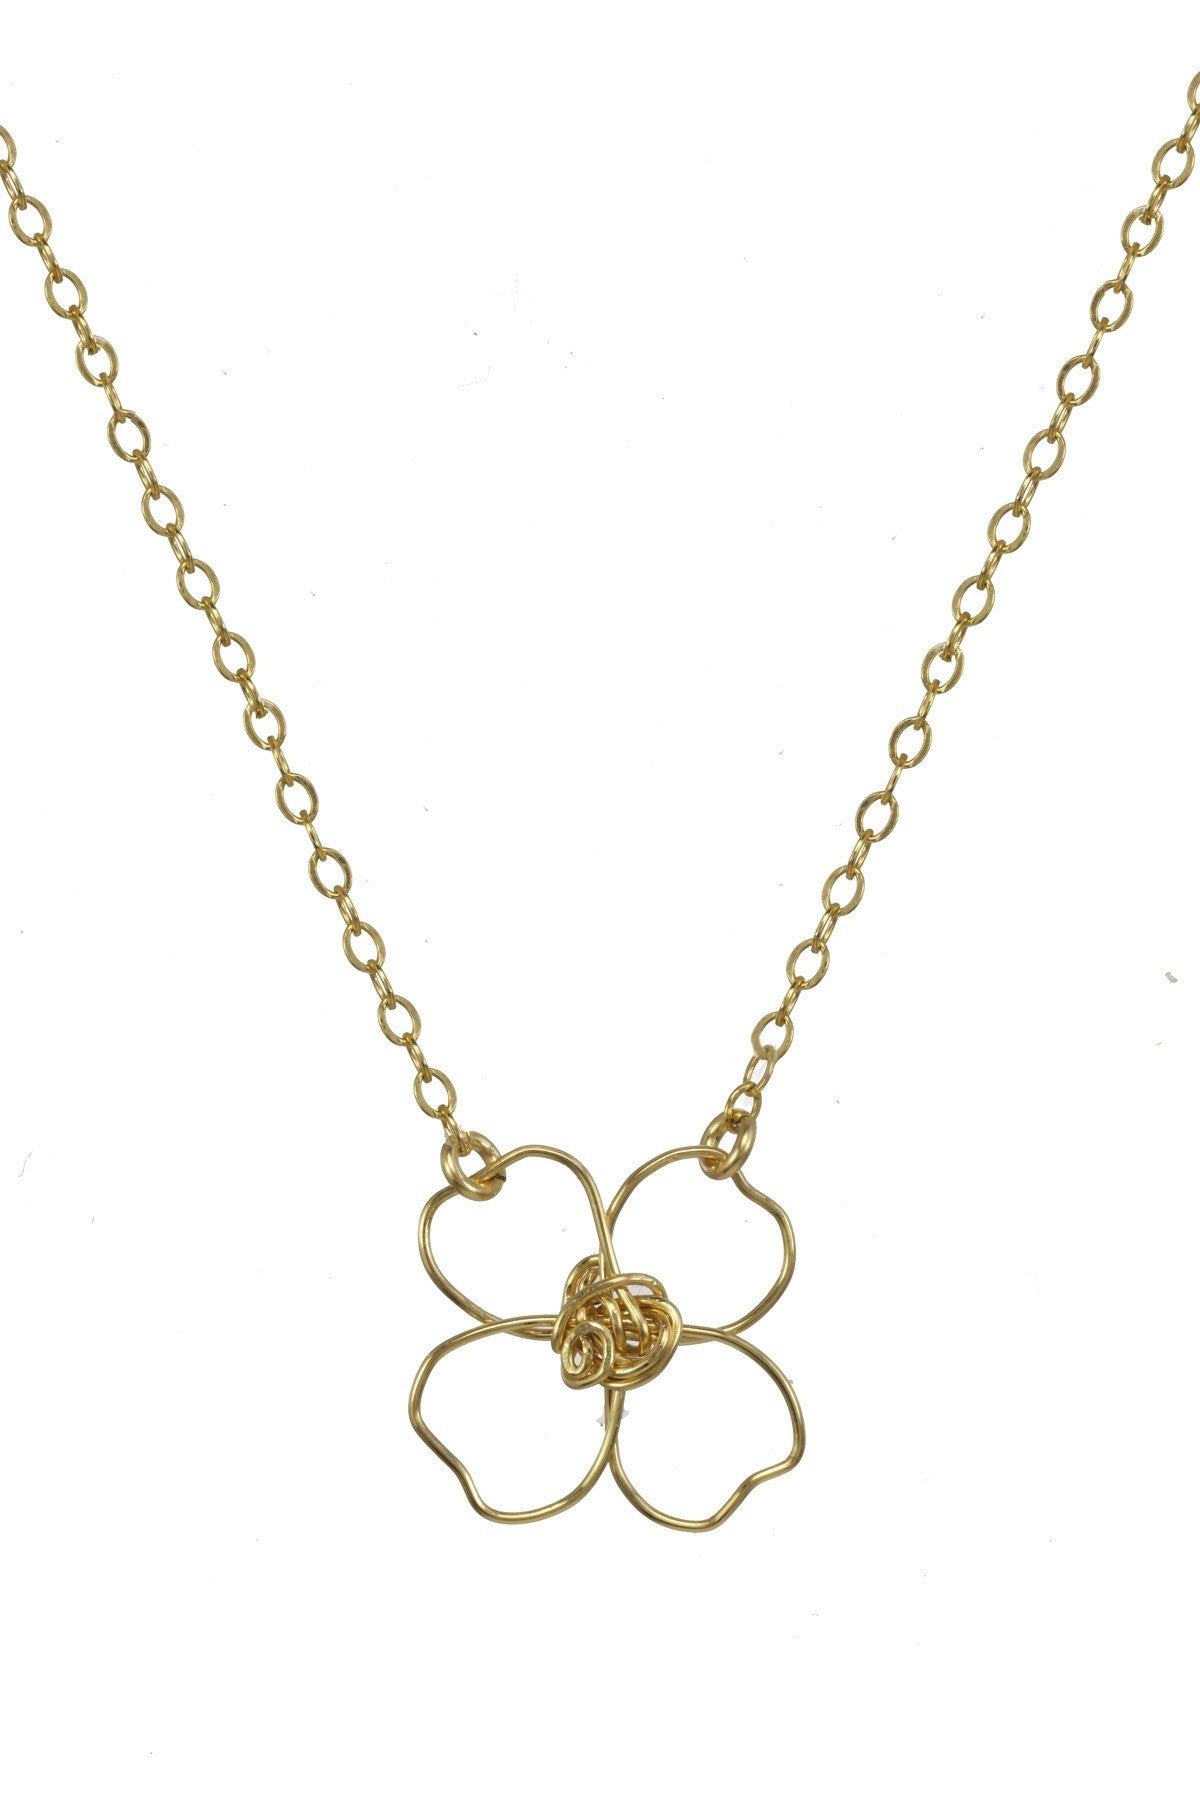 Gold four leaf clover necklace